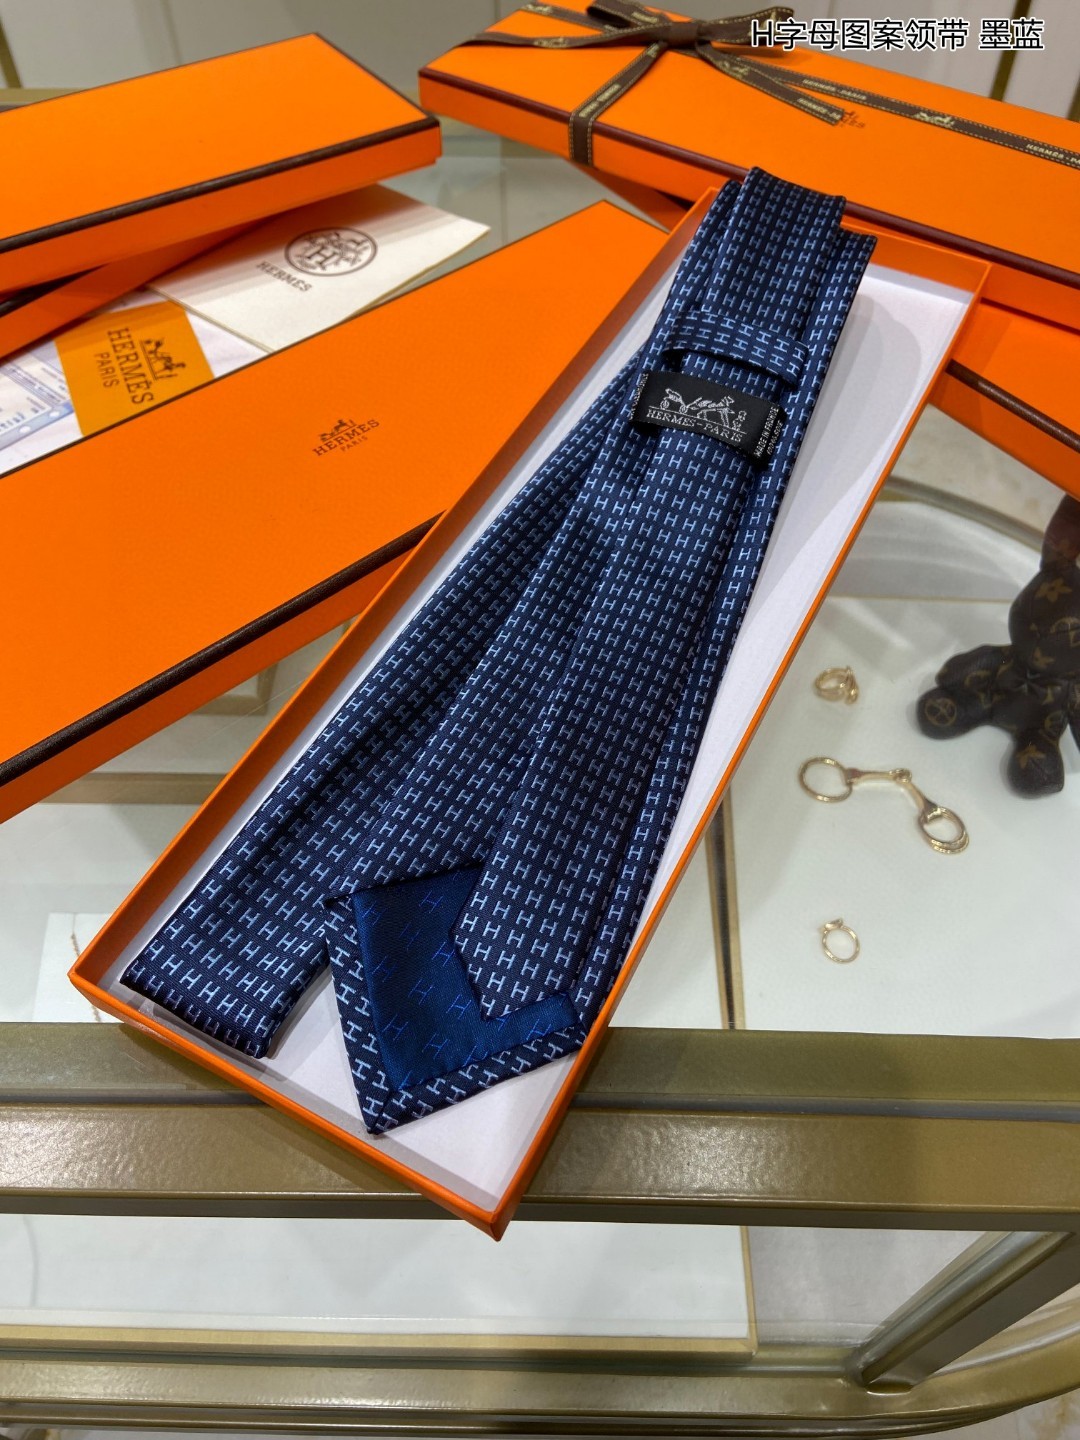 男士新款领带系列H字母图案领带稀有H